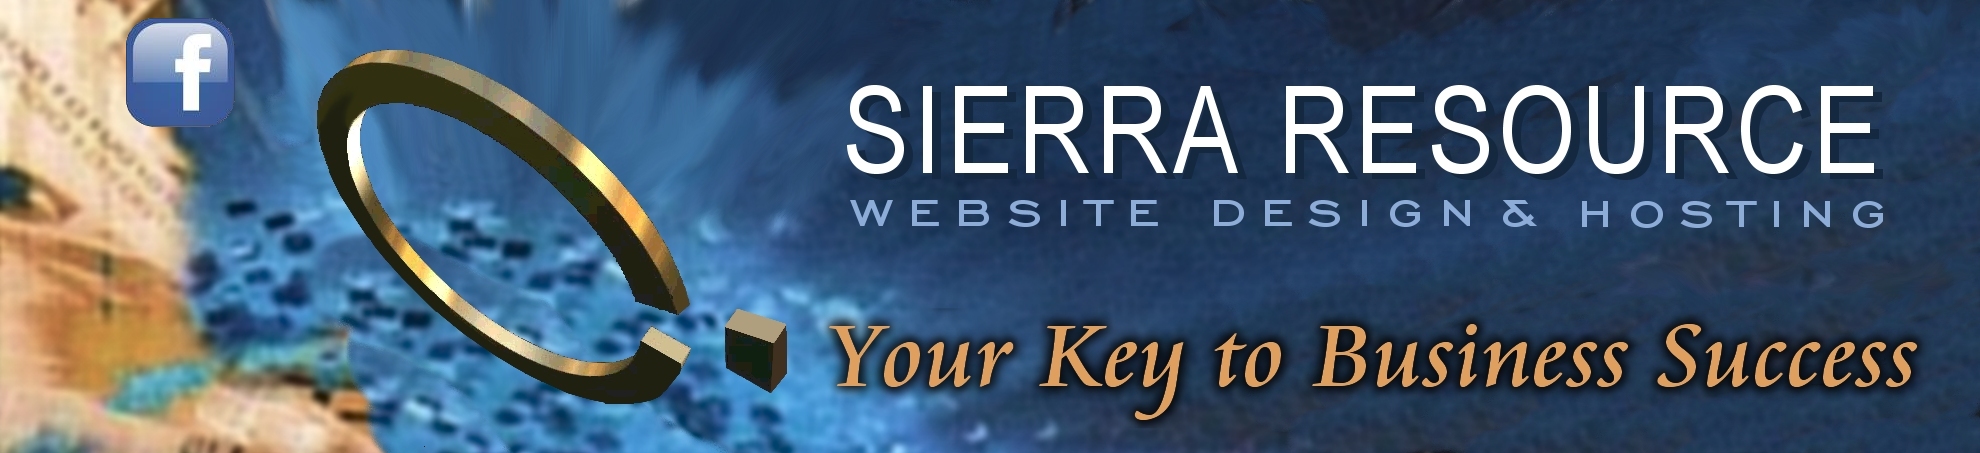 custom website Design Hosting Sierra Resource